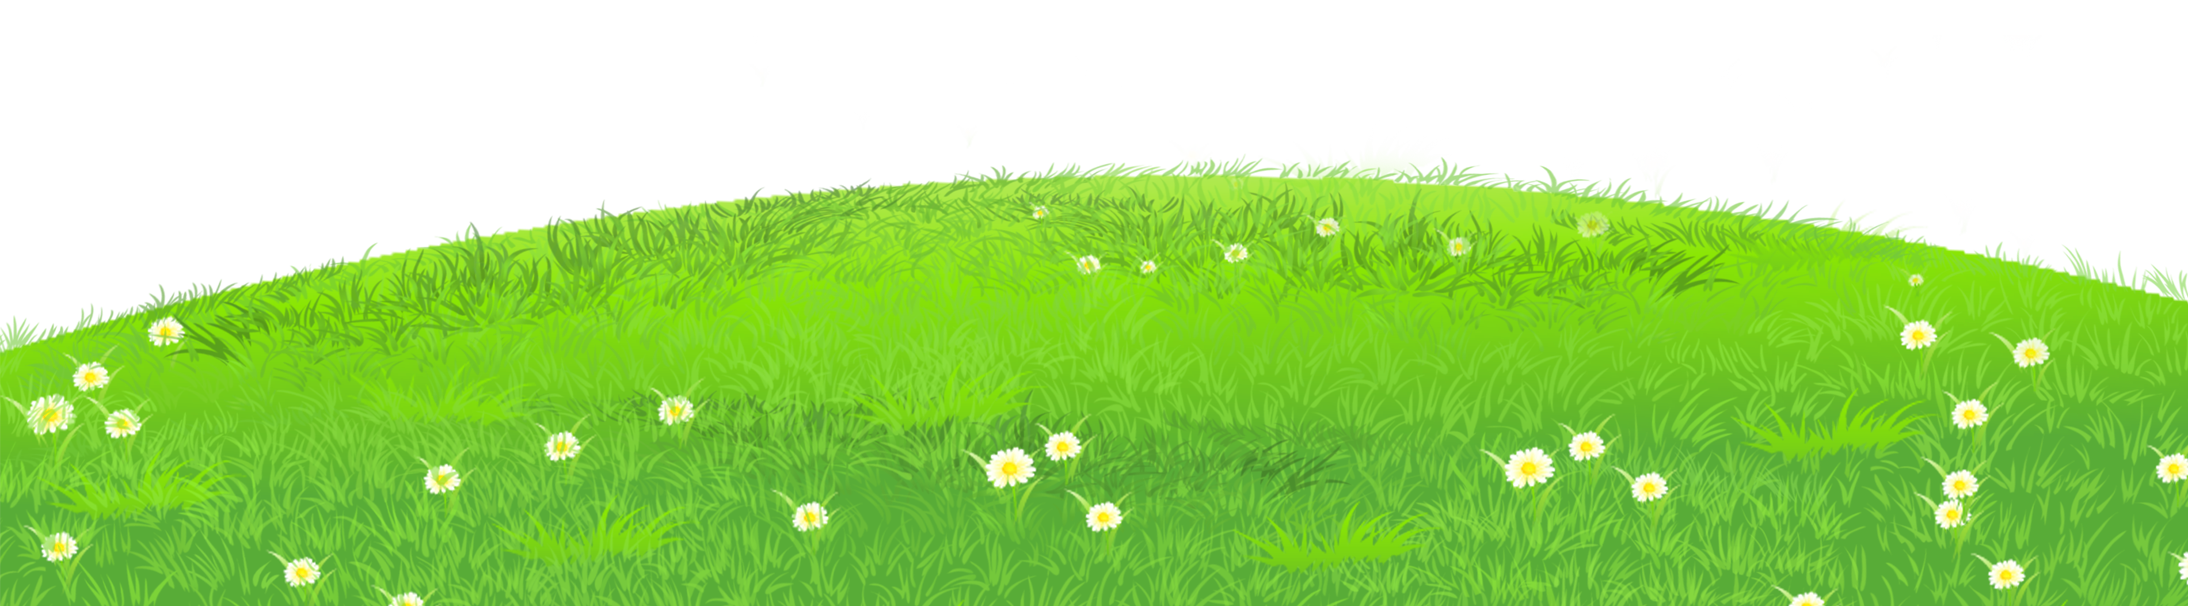 Clipart grass field 